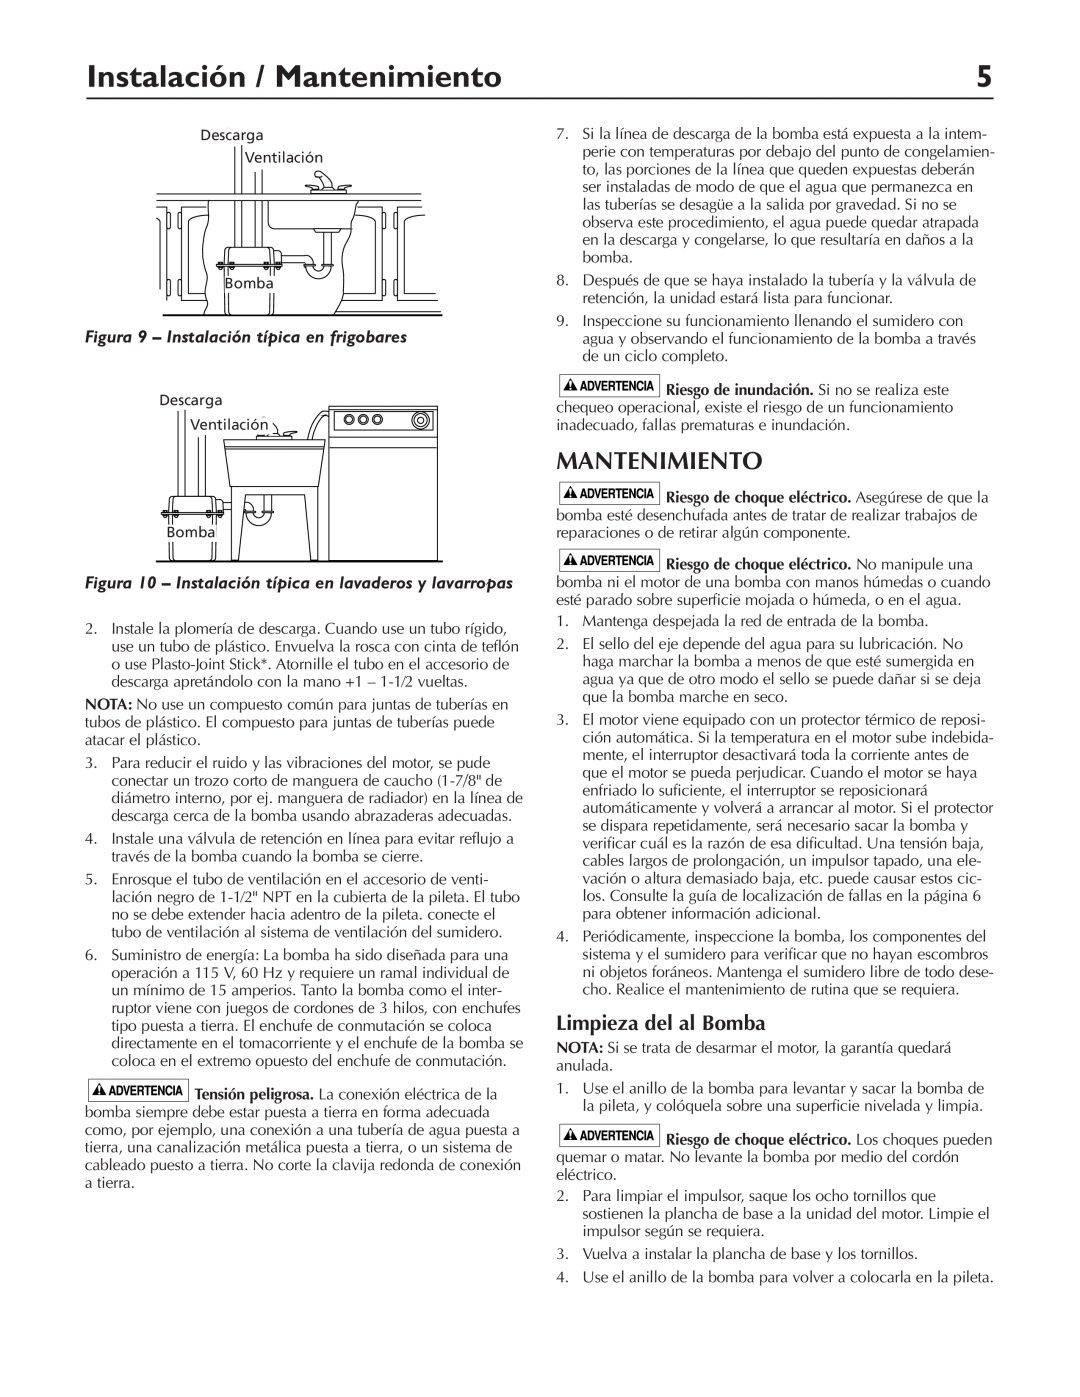 Pentair DP233110V Instalación / Mantenimiento, Limpieza del al Bomba, Figura 9 – Instalación típica en frigobares 